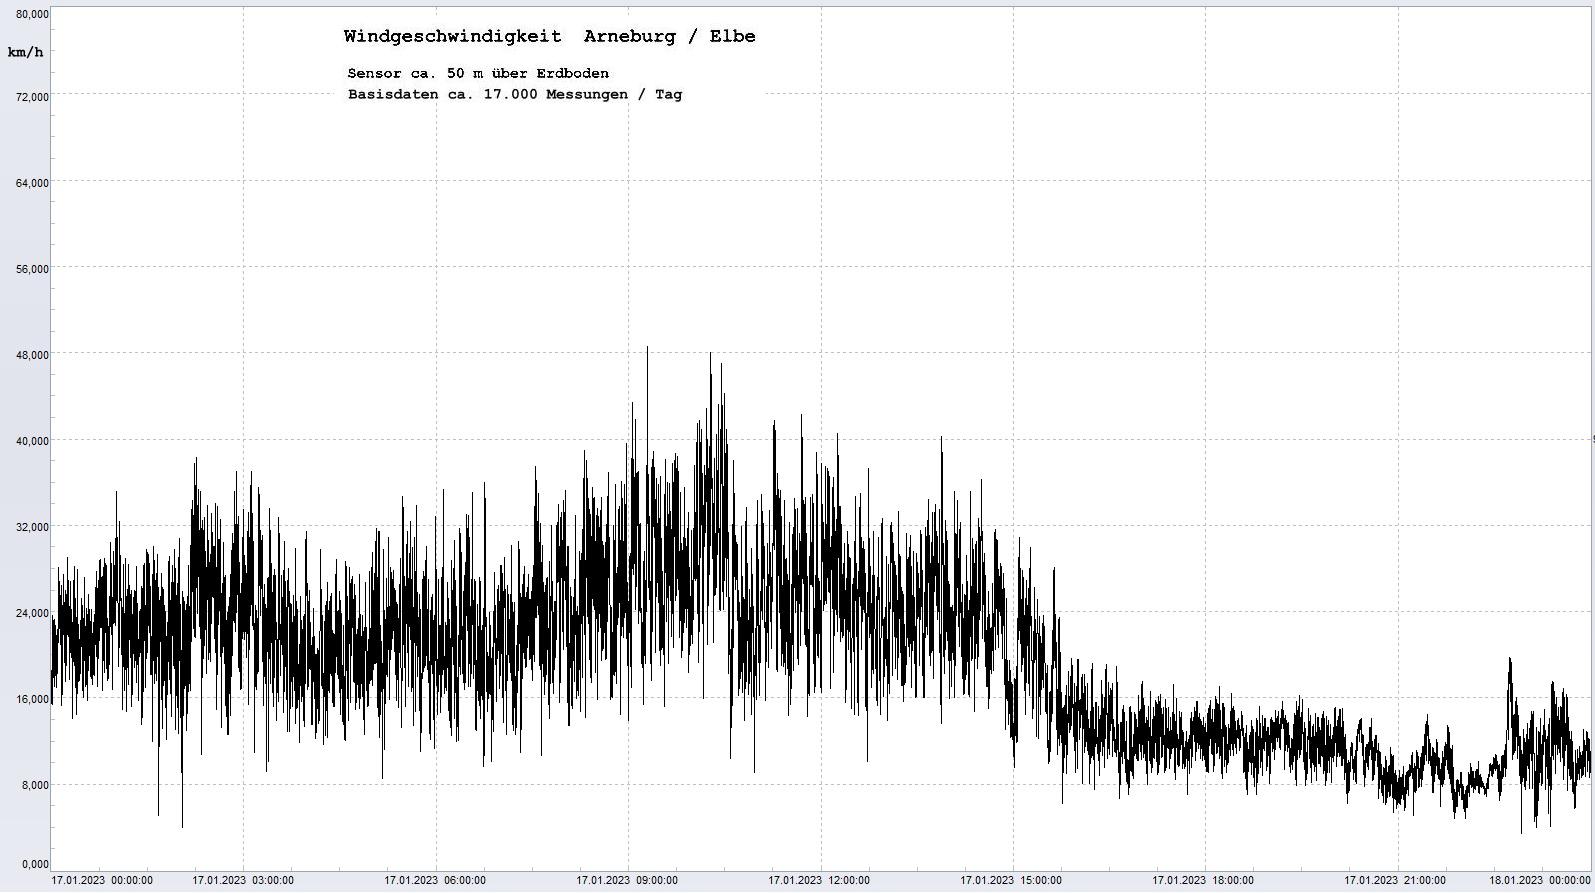 Arneburg Tages-Diagramm Winddaten, 17.01.2023
  Diagramm, Sensor auf Gebude, ca. 50 m ber Erdboden, Basis: 5s-Aufzeichnung